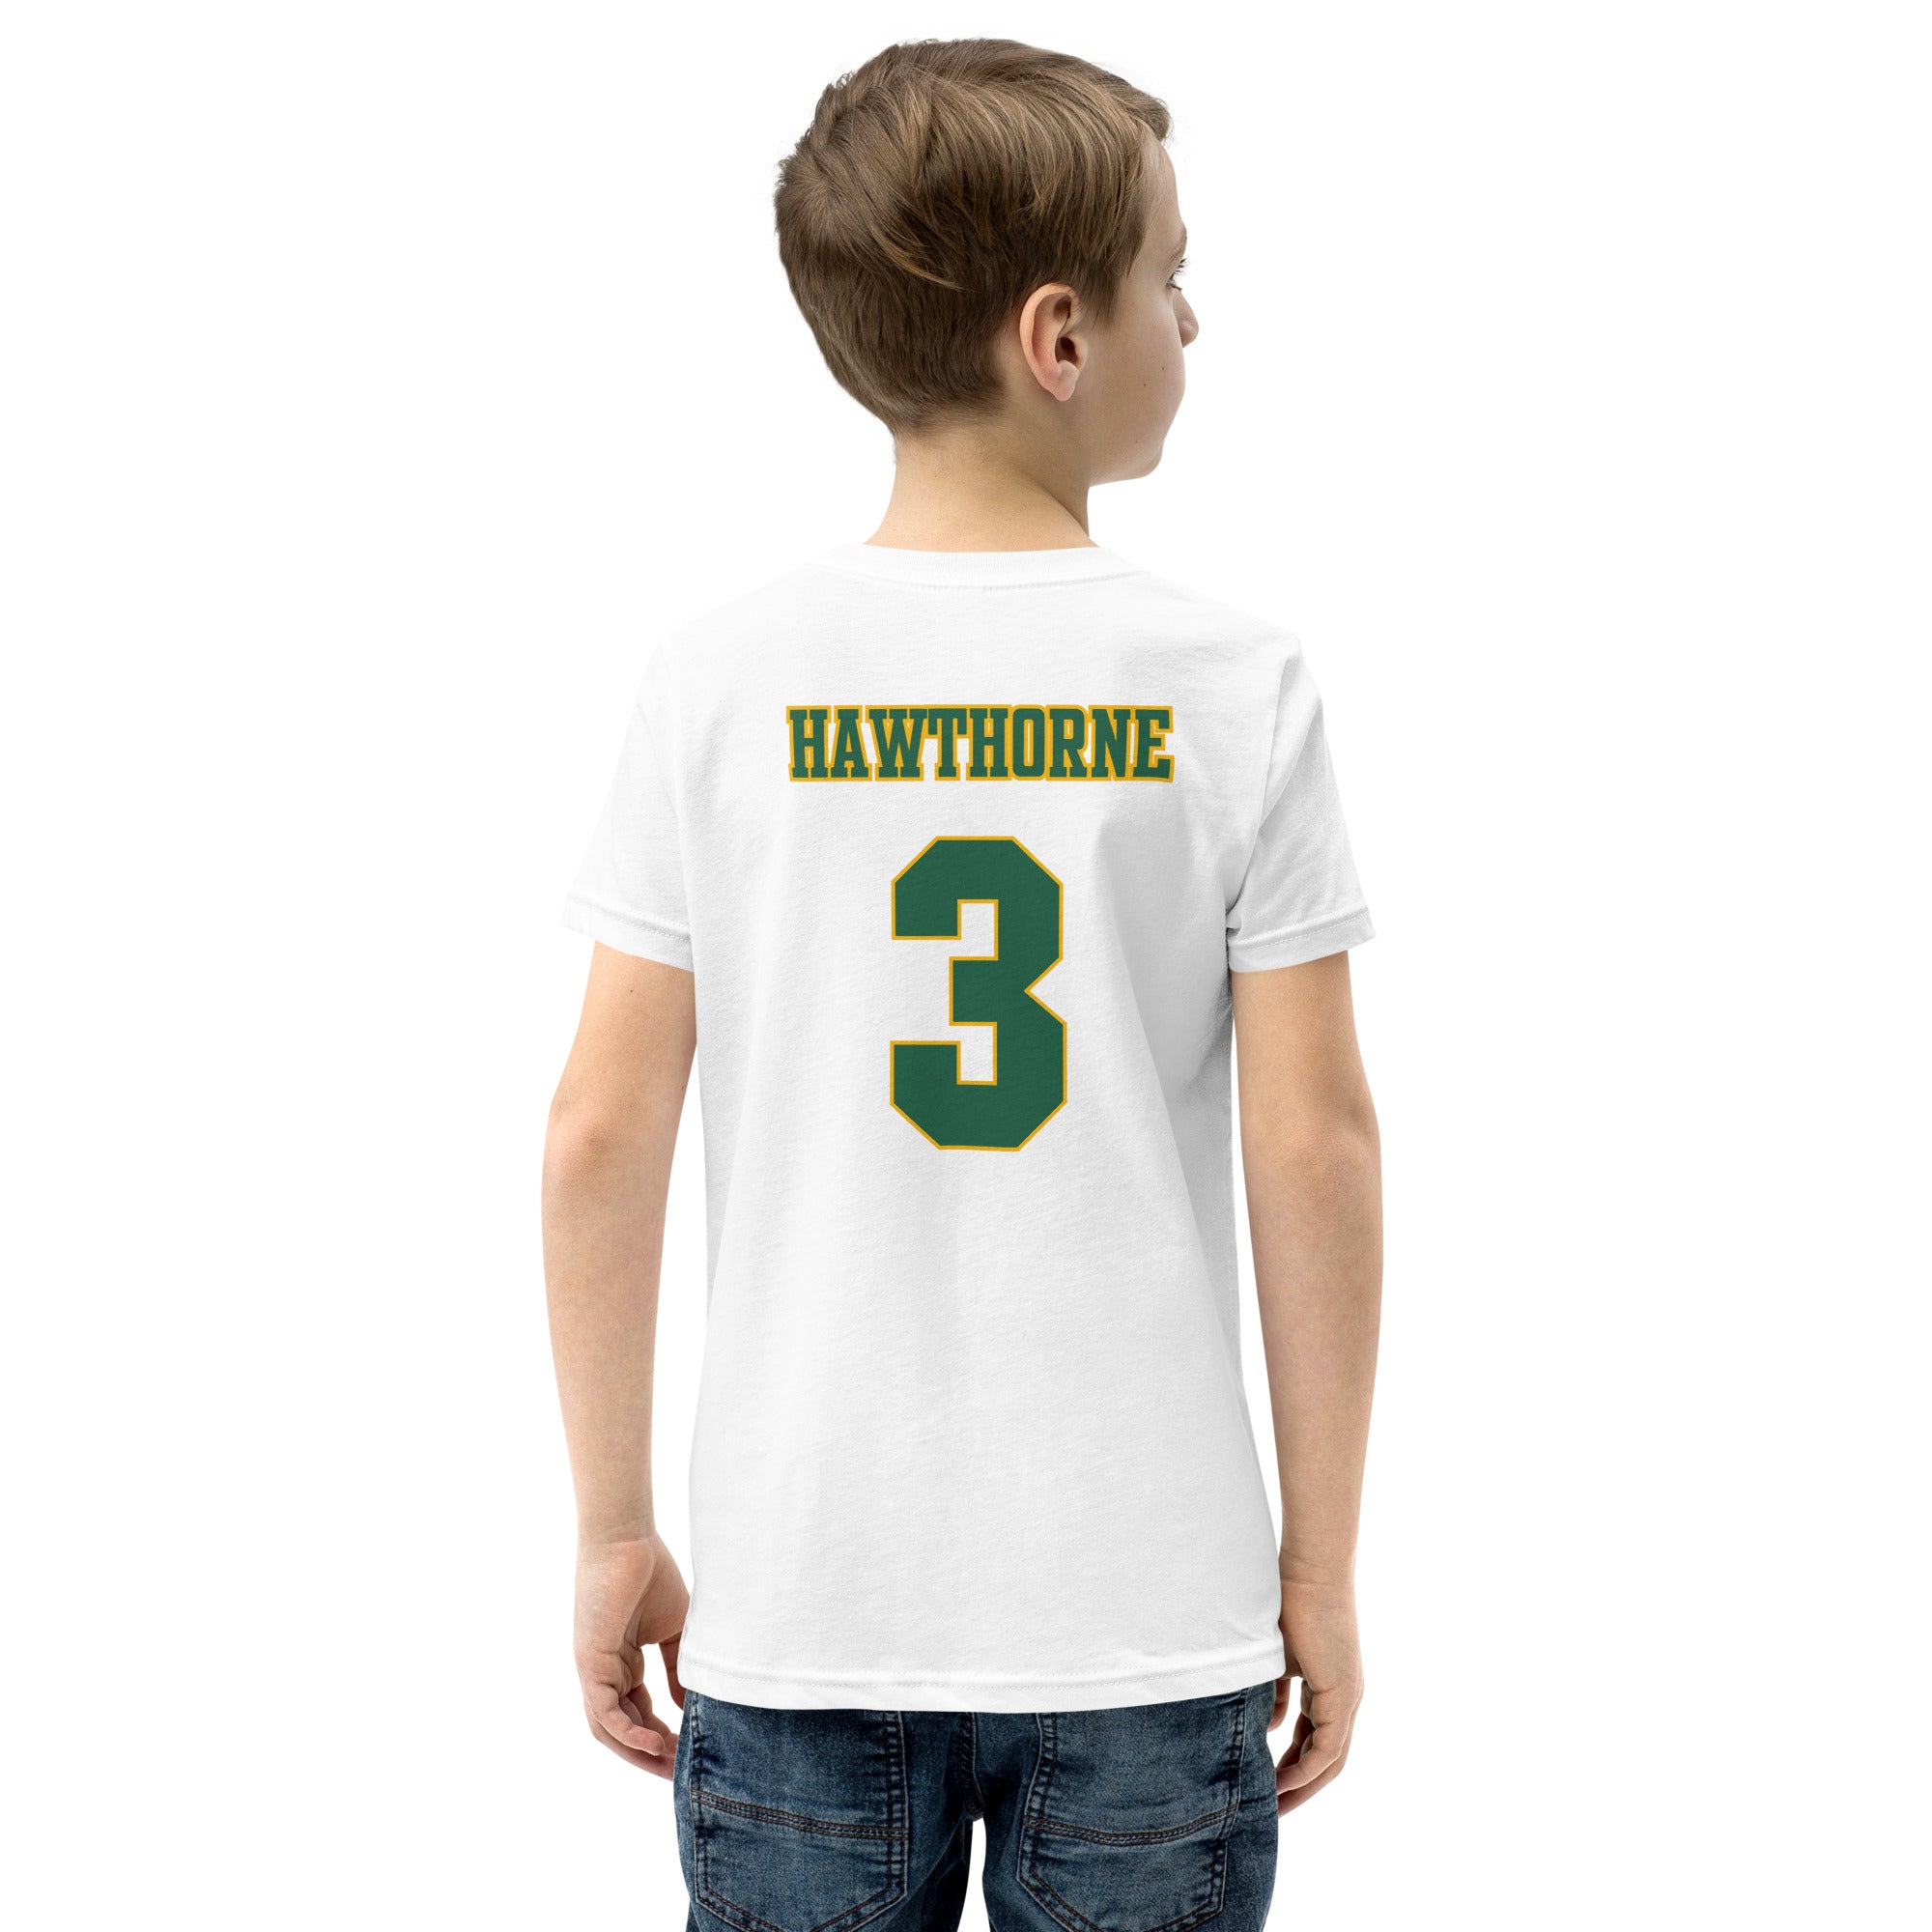 Isaiah Hawthorne #3 Youth Short Sleeve T-Shirt